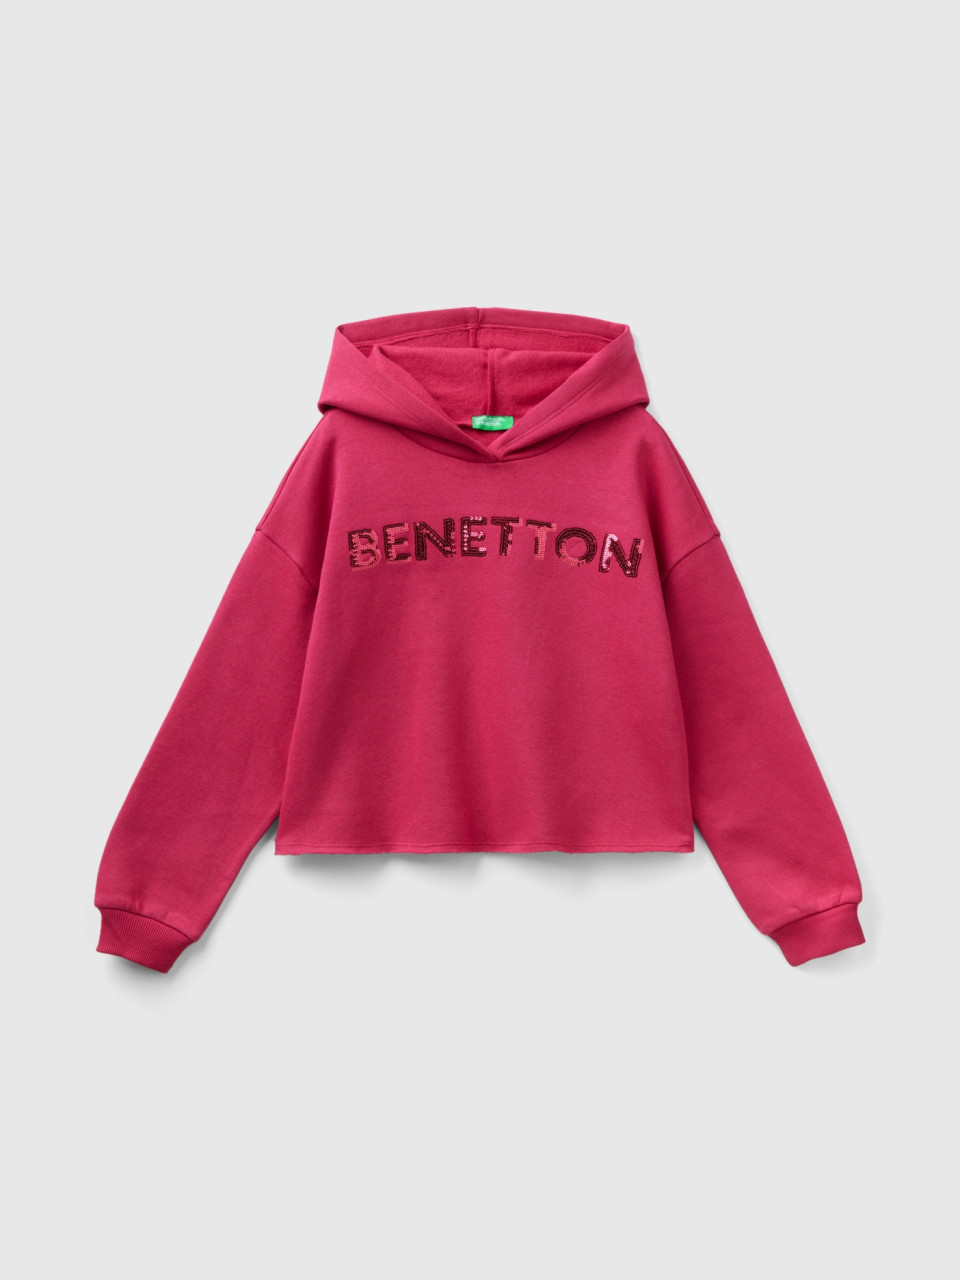 Benetton, Kapuzen-sweatshirt Mit Pailletten, Zyklame, female